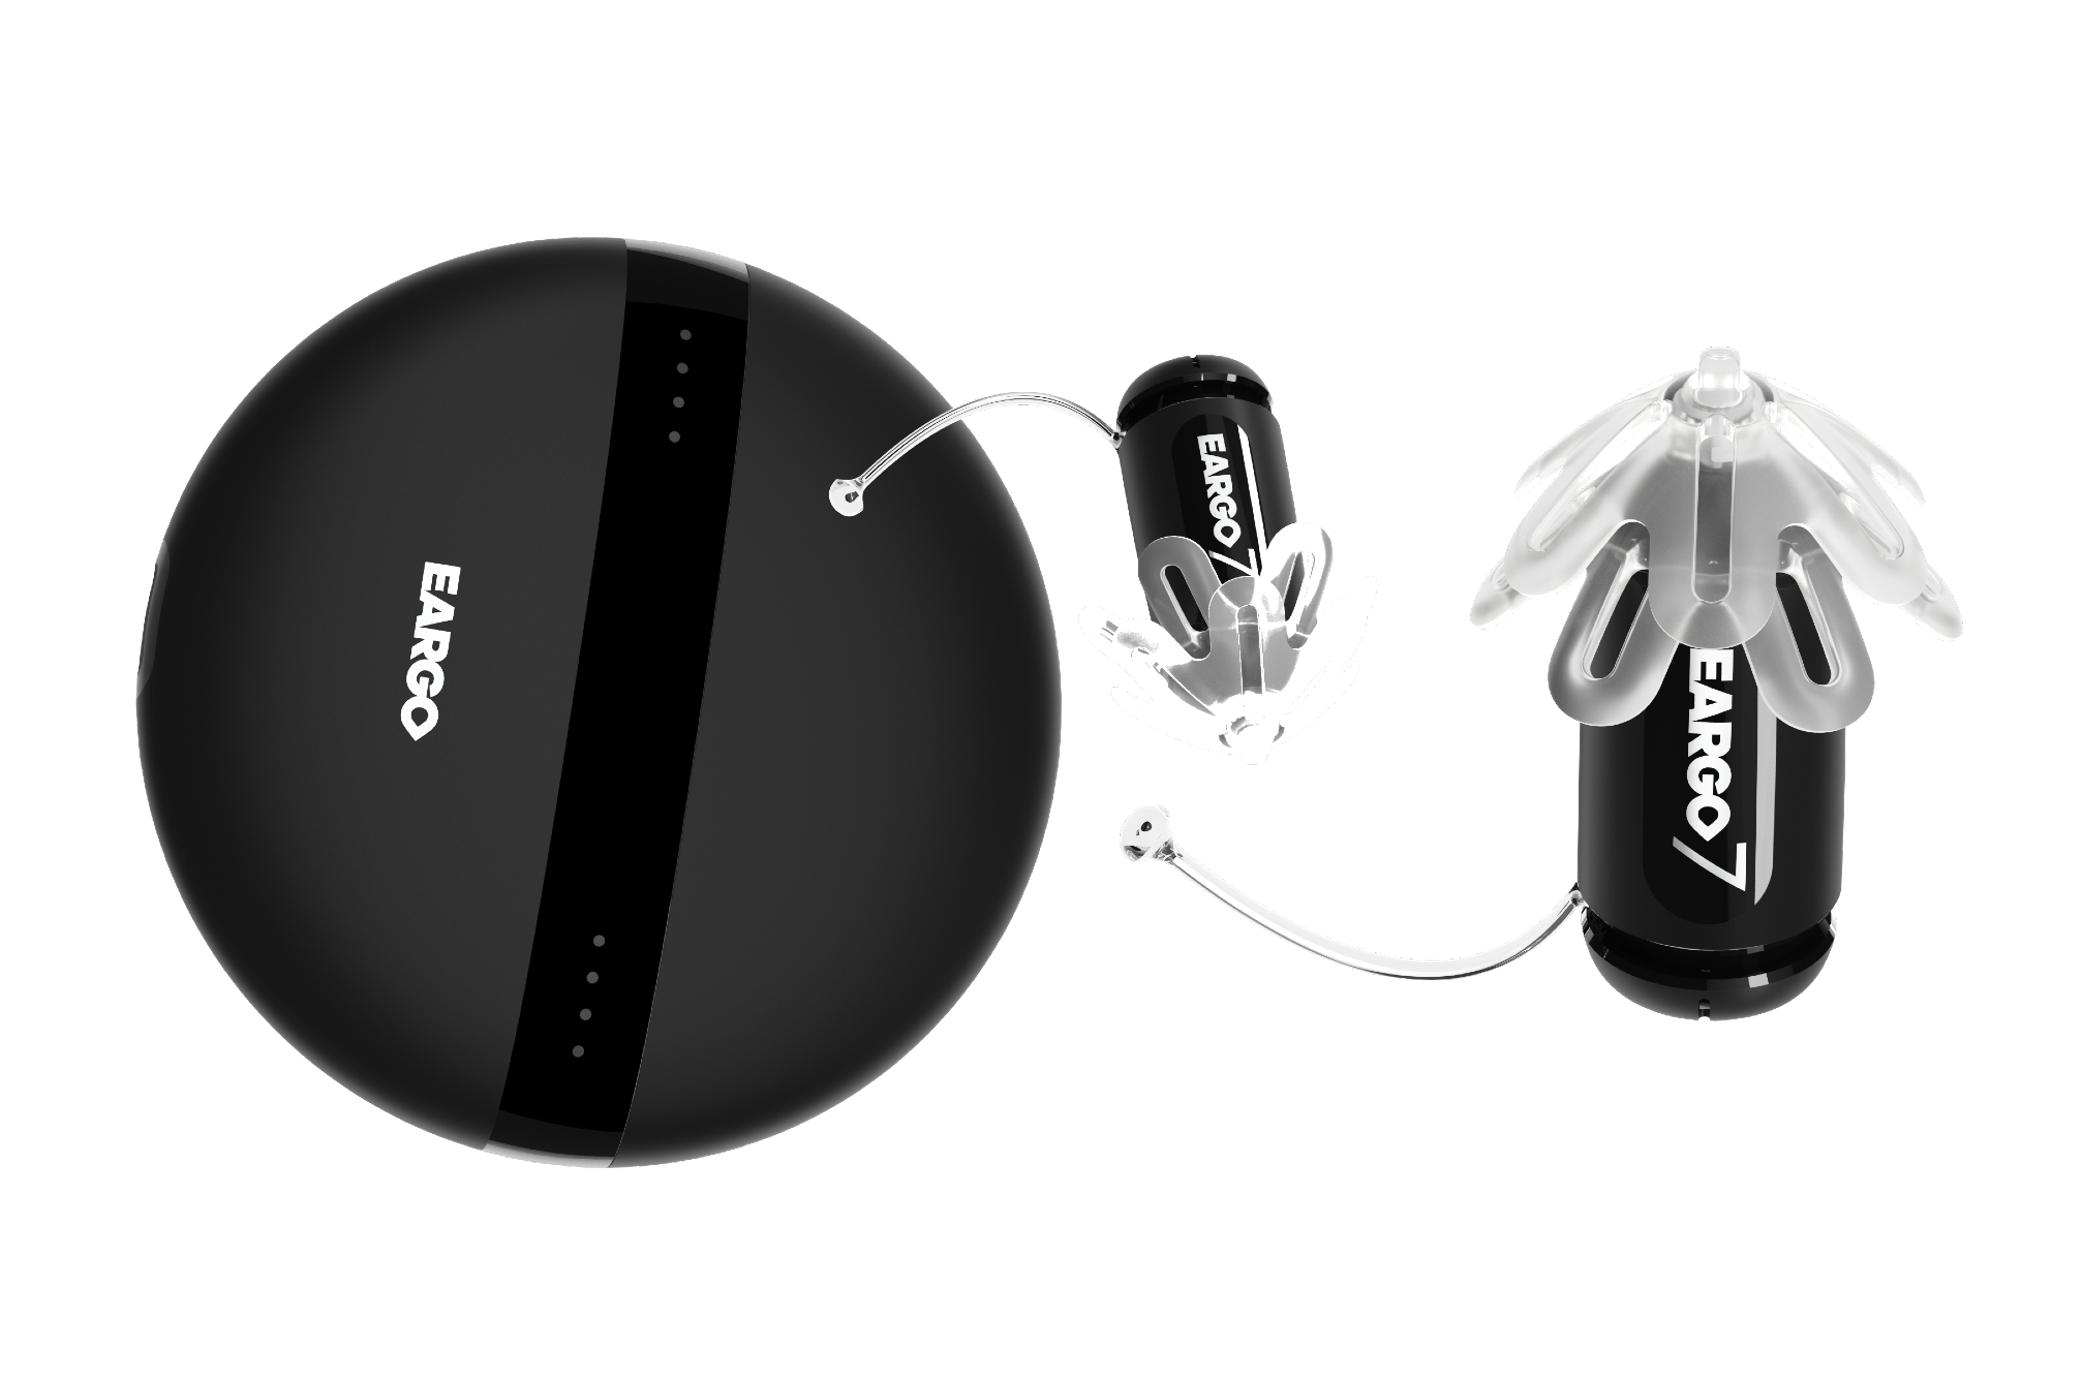 Os aparelhos auditivos de venda livre Eargo 7.